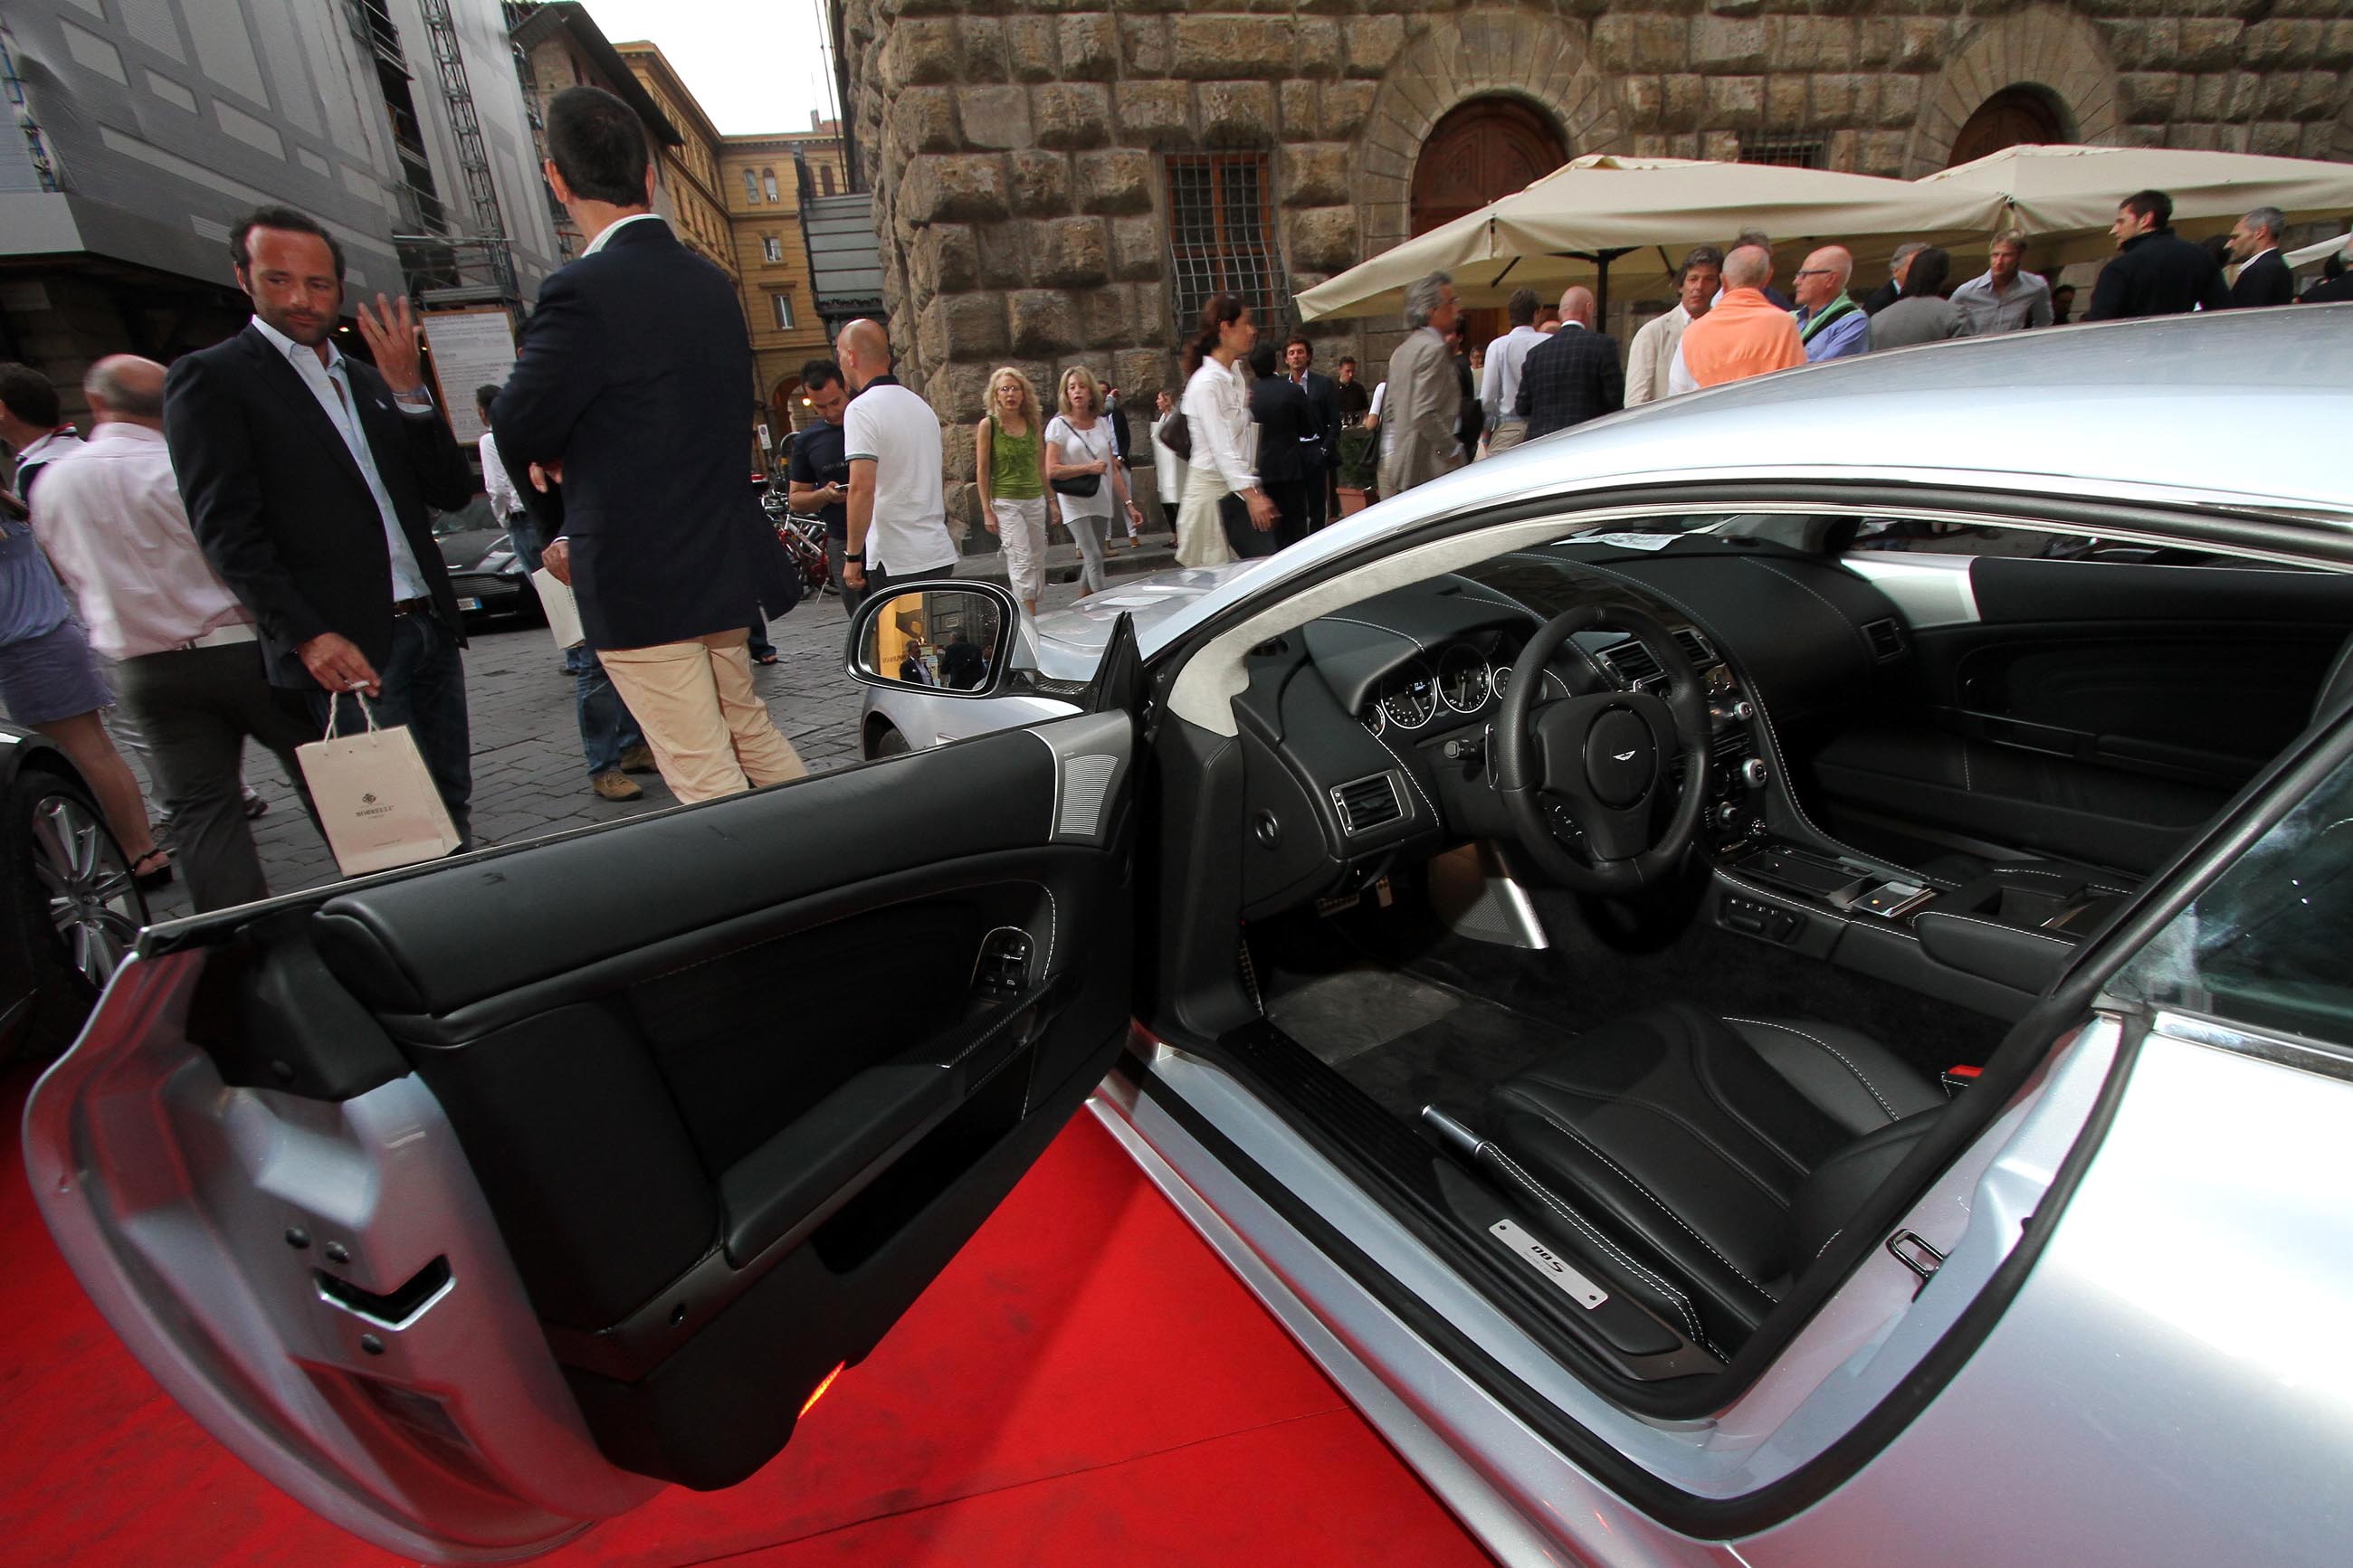 PRESSPHOTO Firenze, Evento Milord Aston Martin. Nella foto 